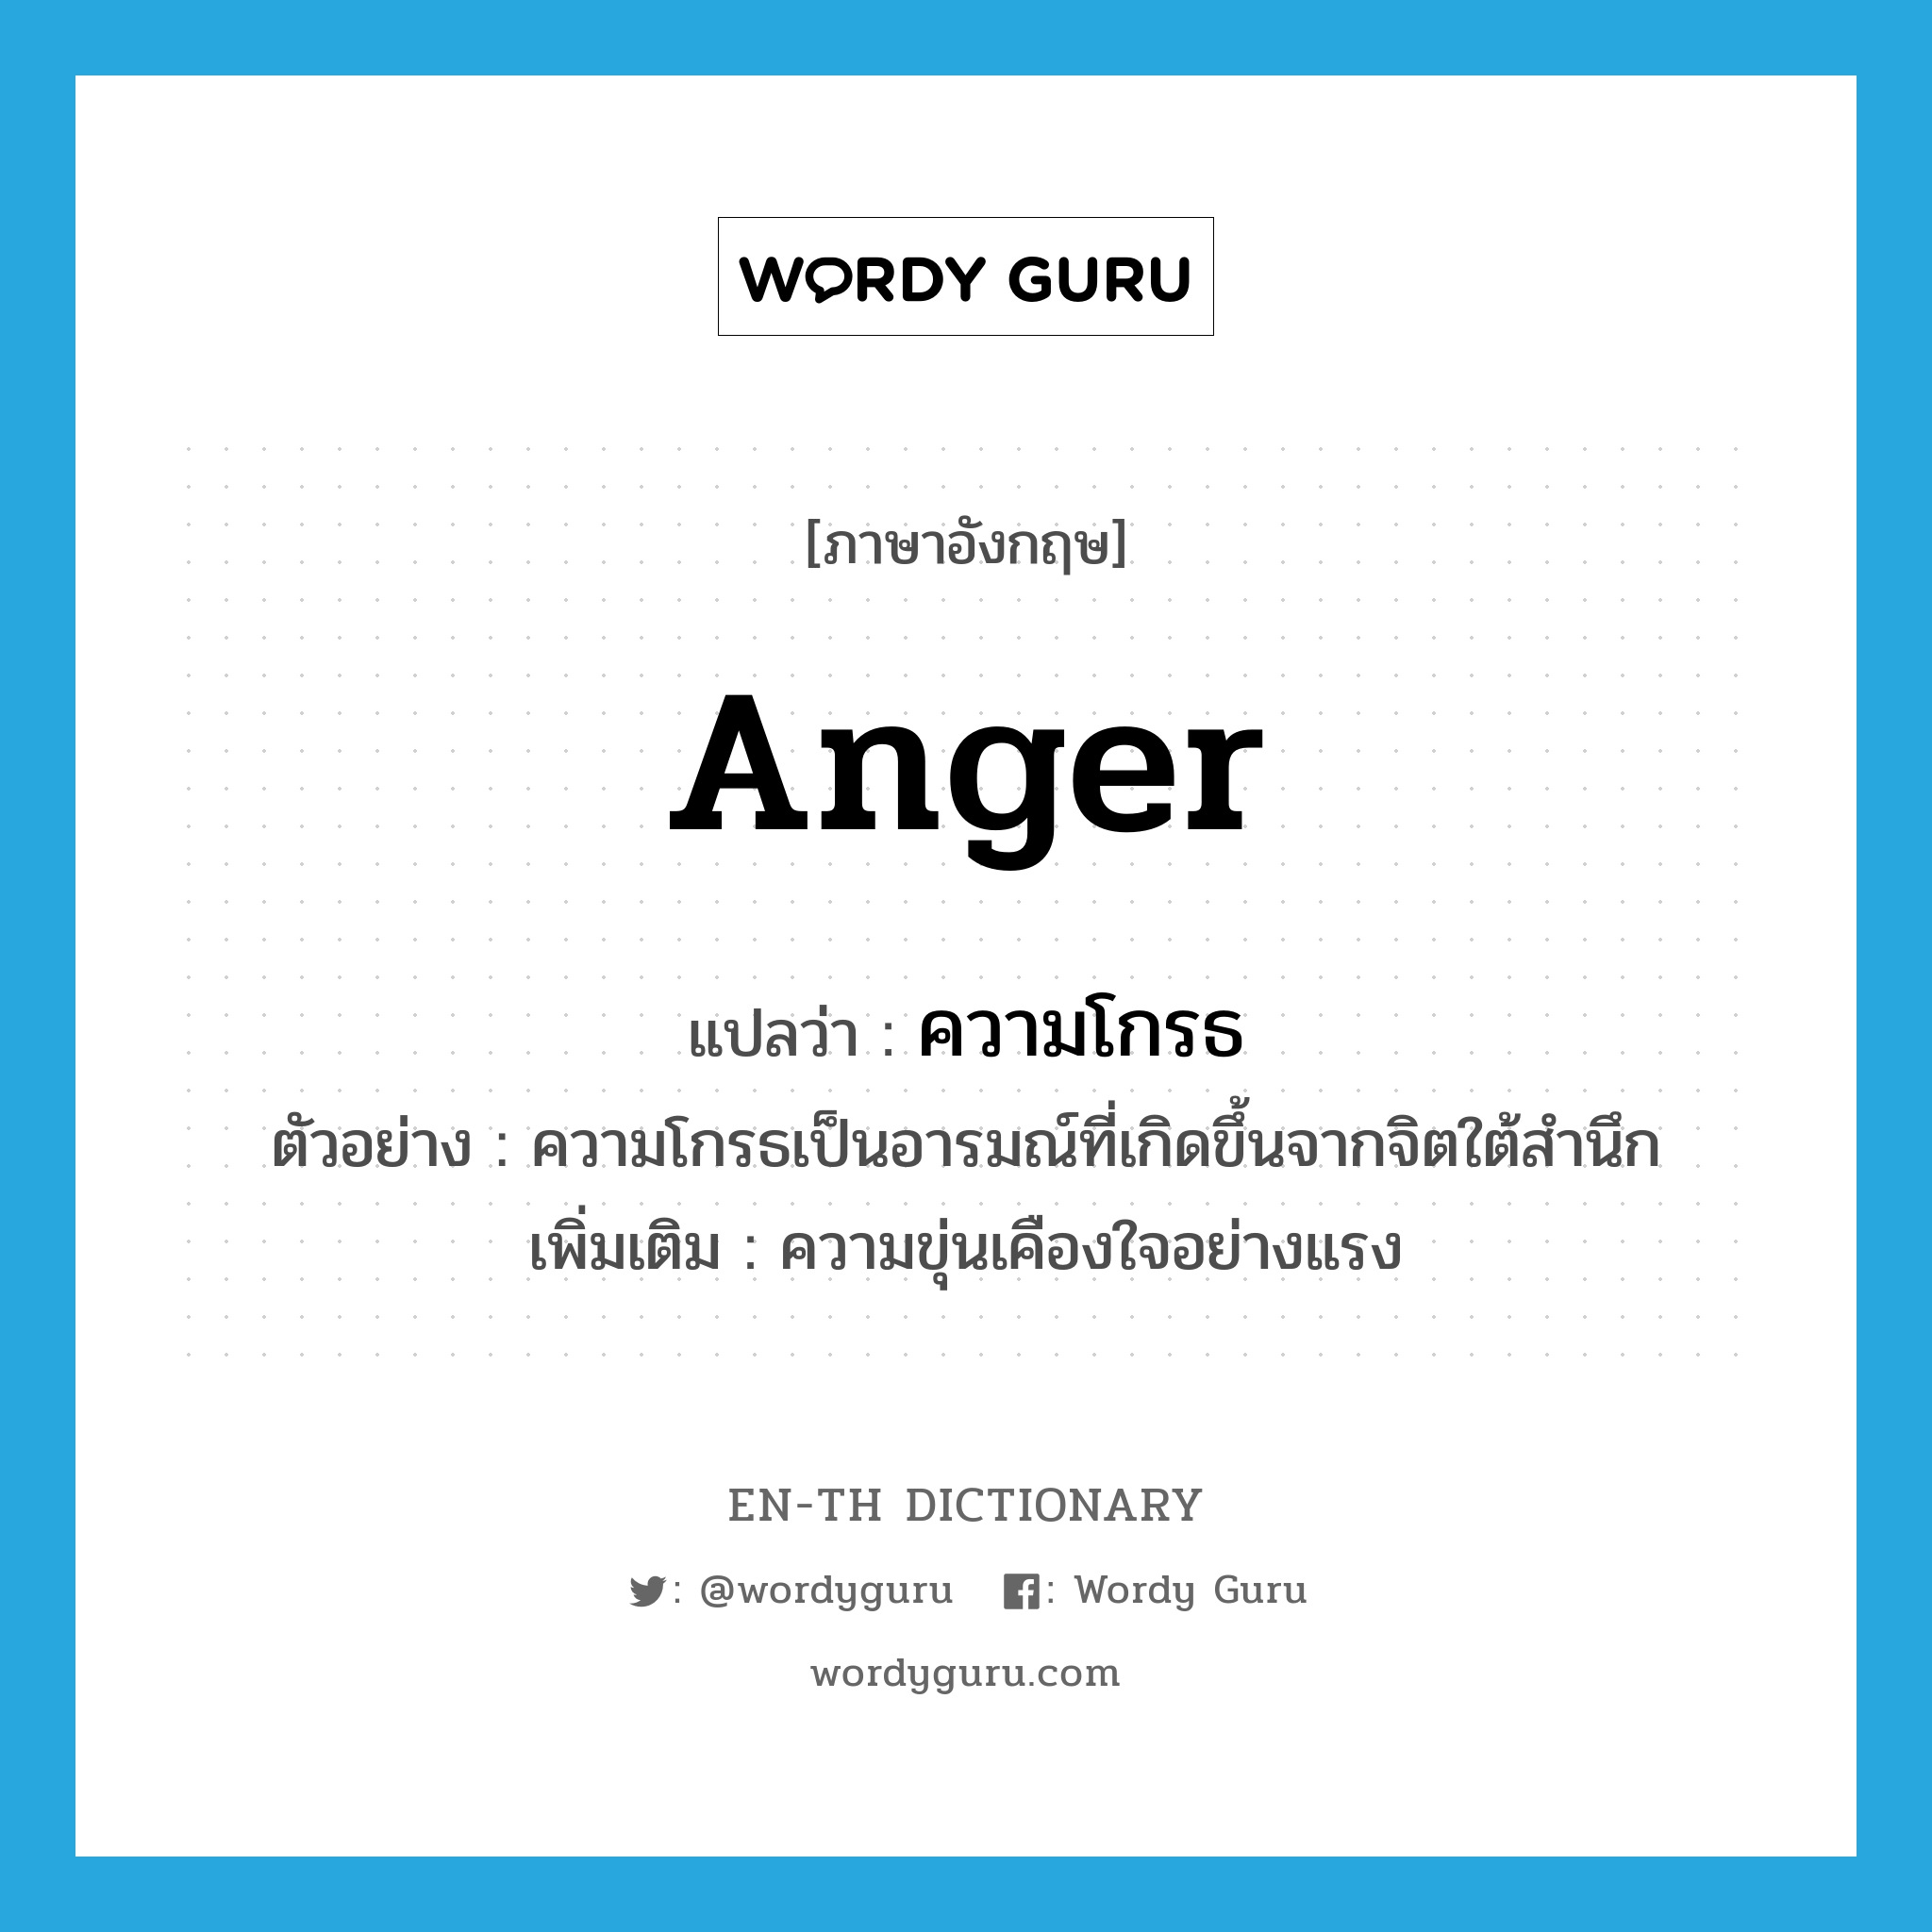 ความโกรธ ภาษาอังกฤษ?, คำศัพท์ภาษาอังกฤษ ความโกรธ แปลว่า anger ประเภท N ตัวอย่าง ความโกรธเป็นอารมณ์ที่เกิดขึ้นจากจิตใต้สำนึก เพิ่มเติม ความขุ่นเคืองใจอย่างแรง หมวด N